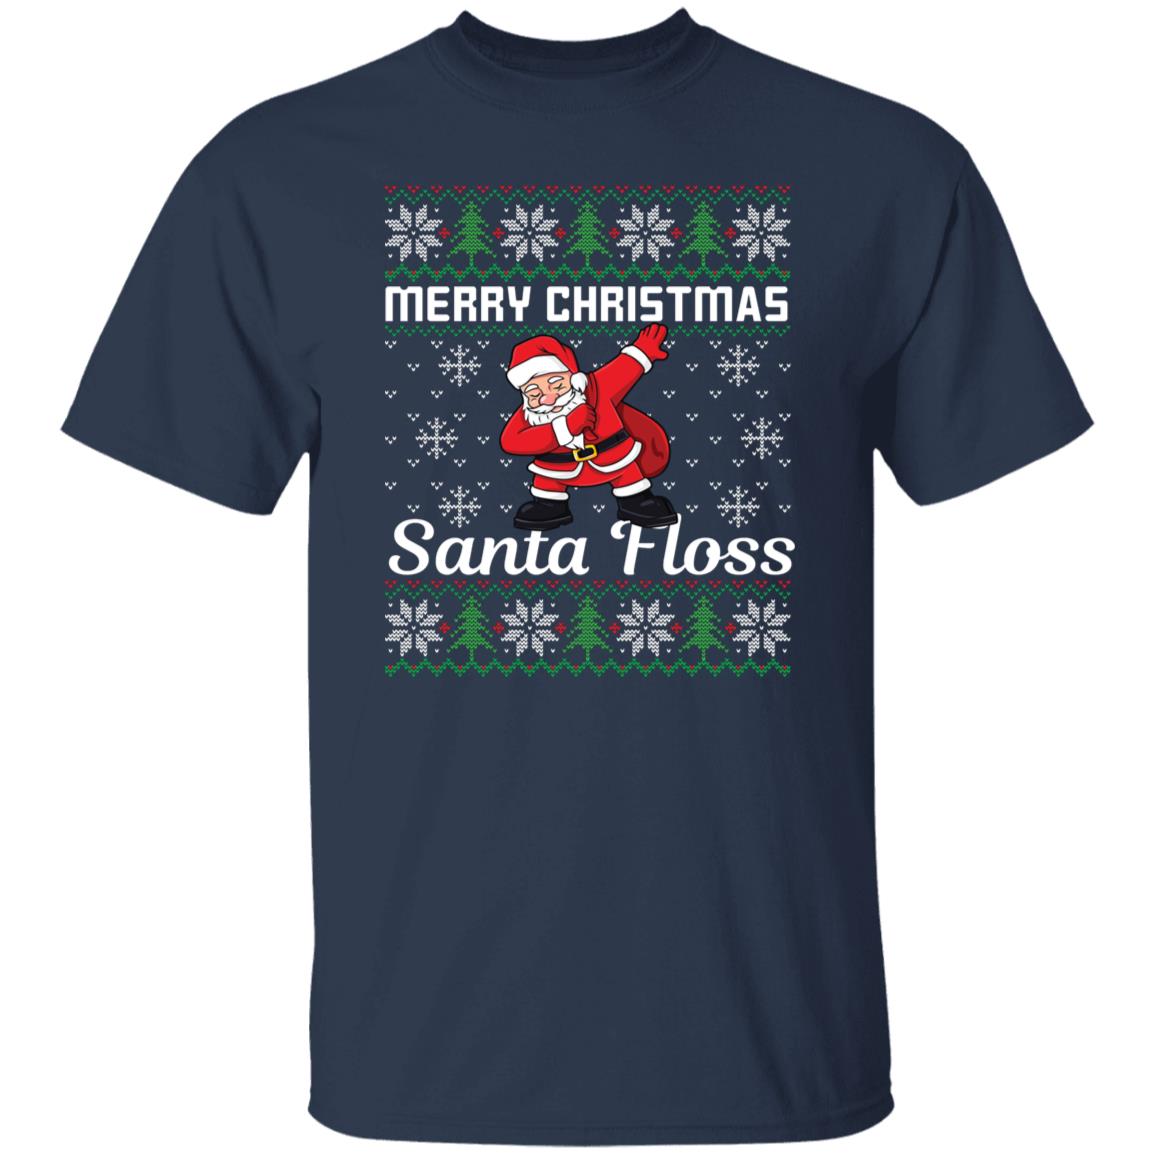 Merry Christmas Funny Tee Santa Floss Ugly Christmas Shirt